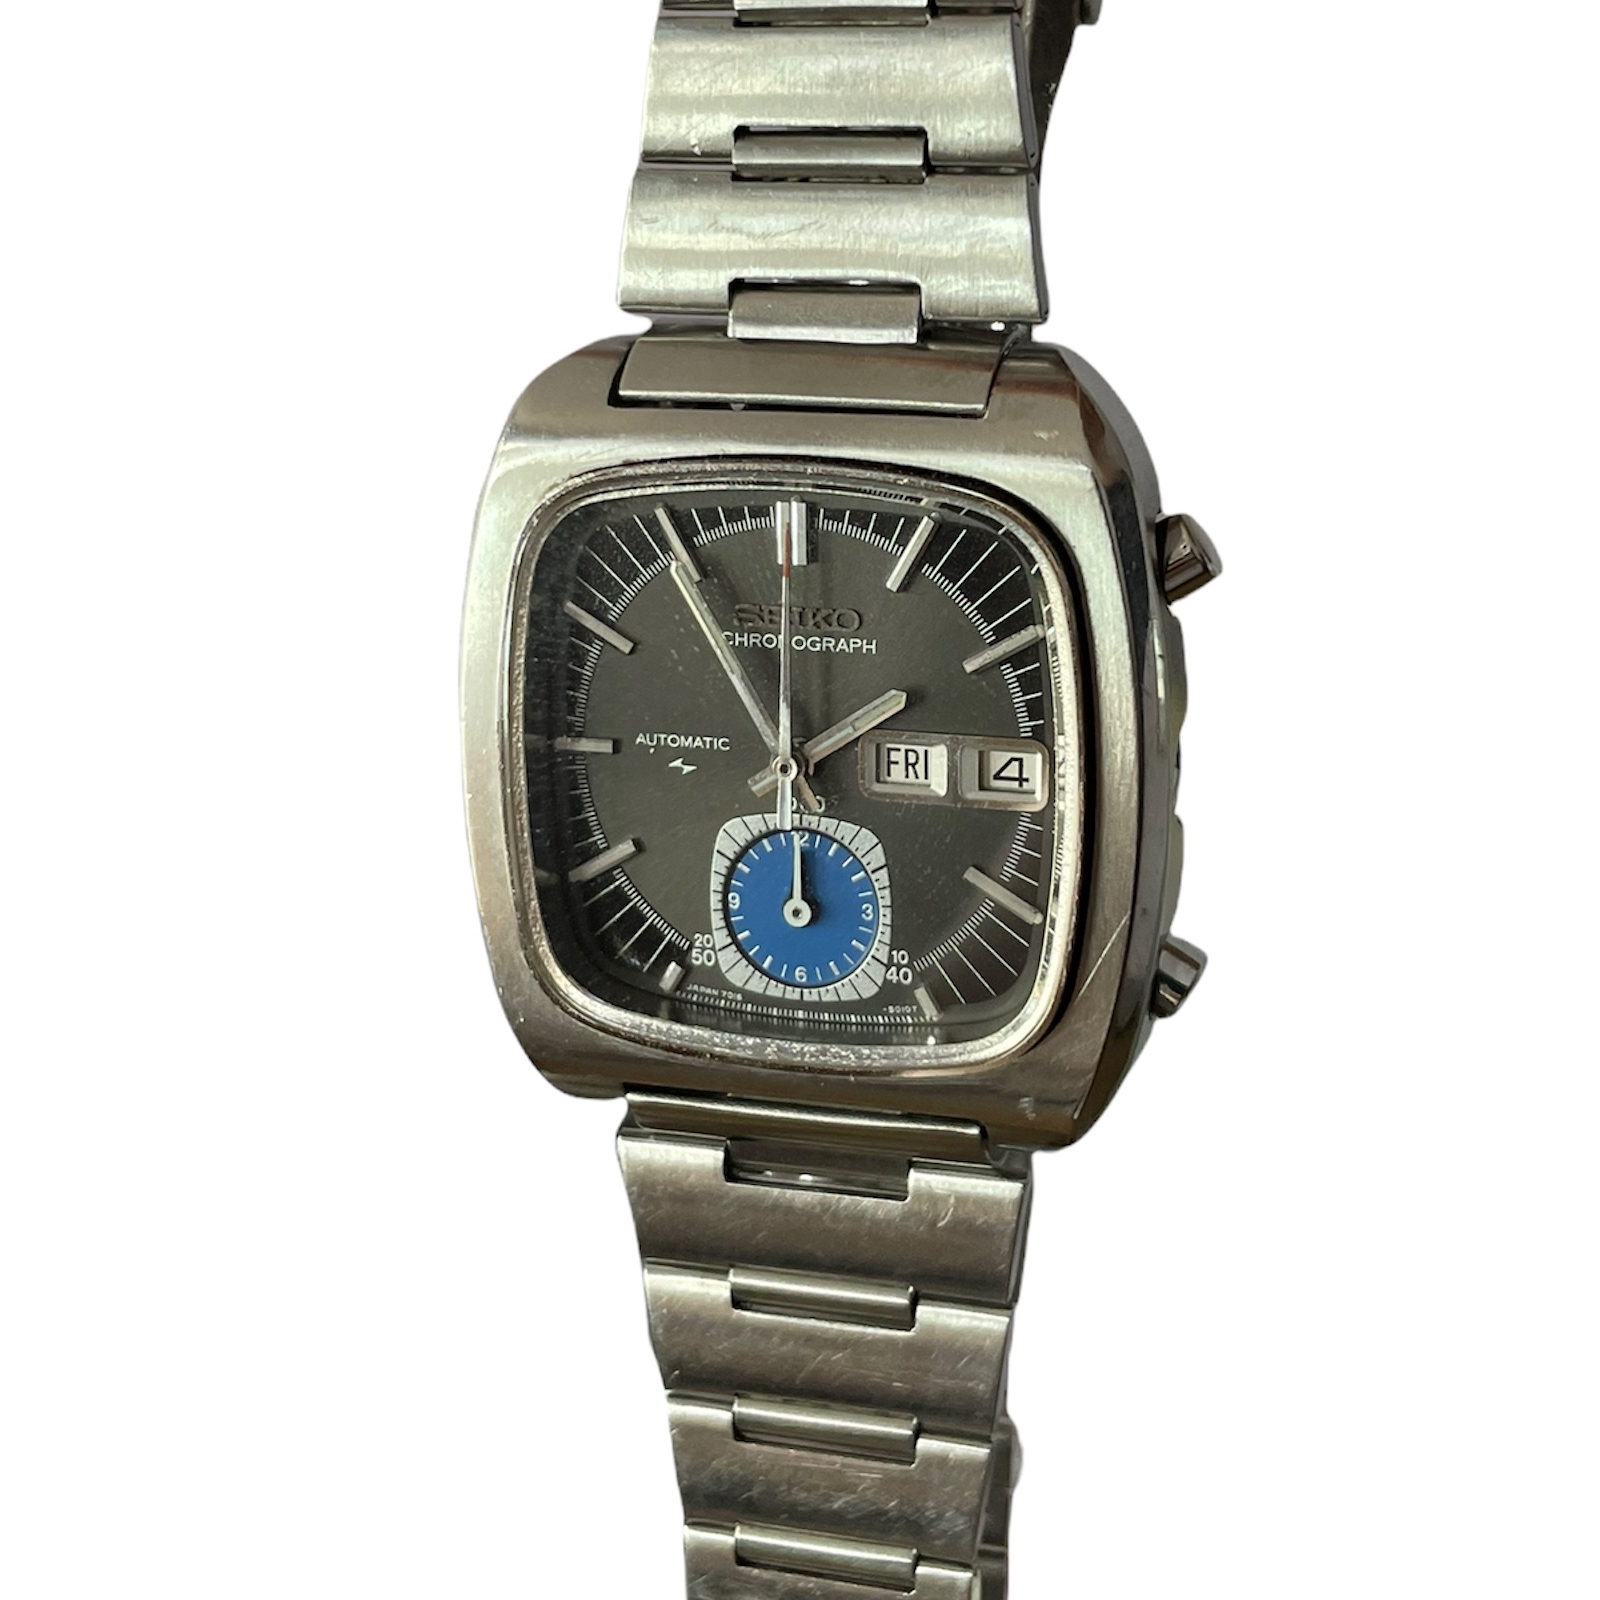 Vintage Seiko Monaco automatic chronograph men's watch 7016-5011 - 219667